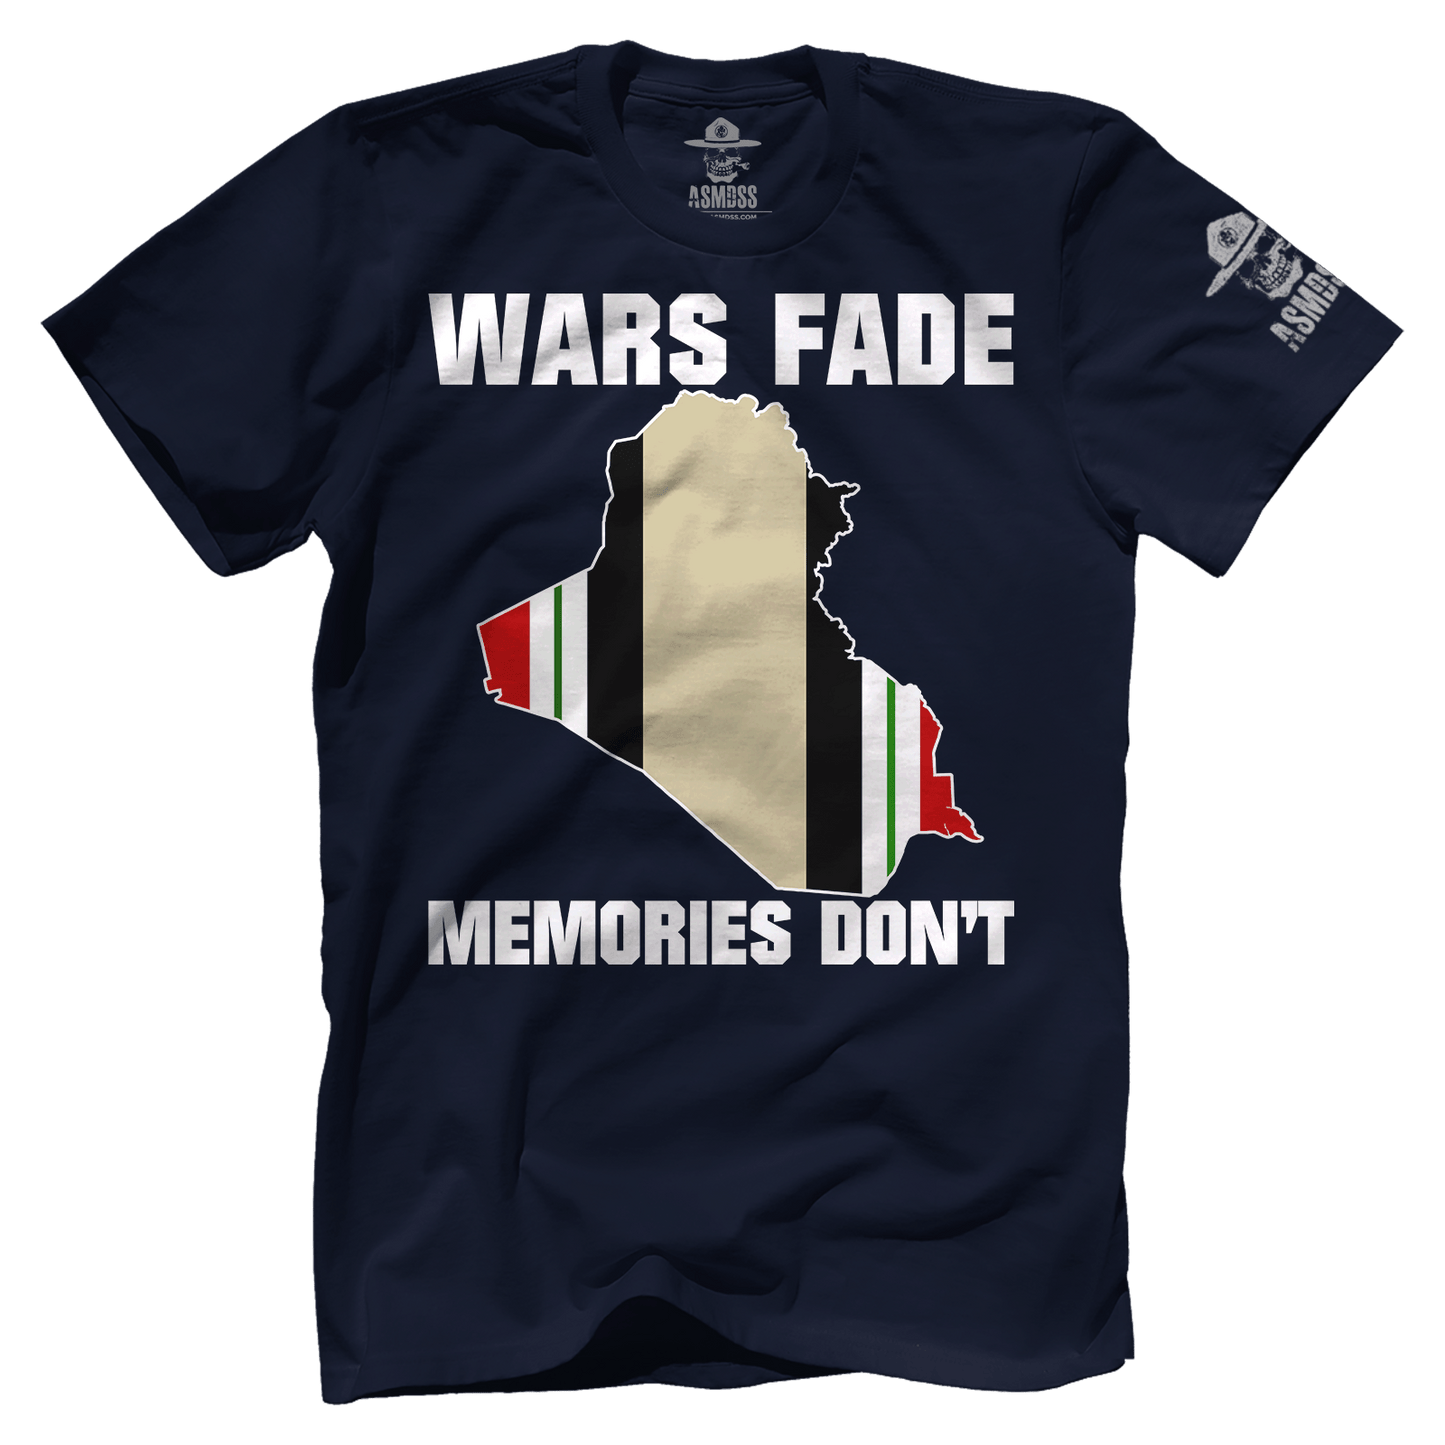 Wars Fade Memories Don't - Iraq